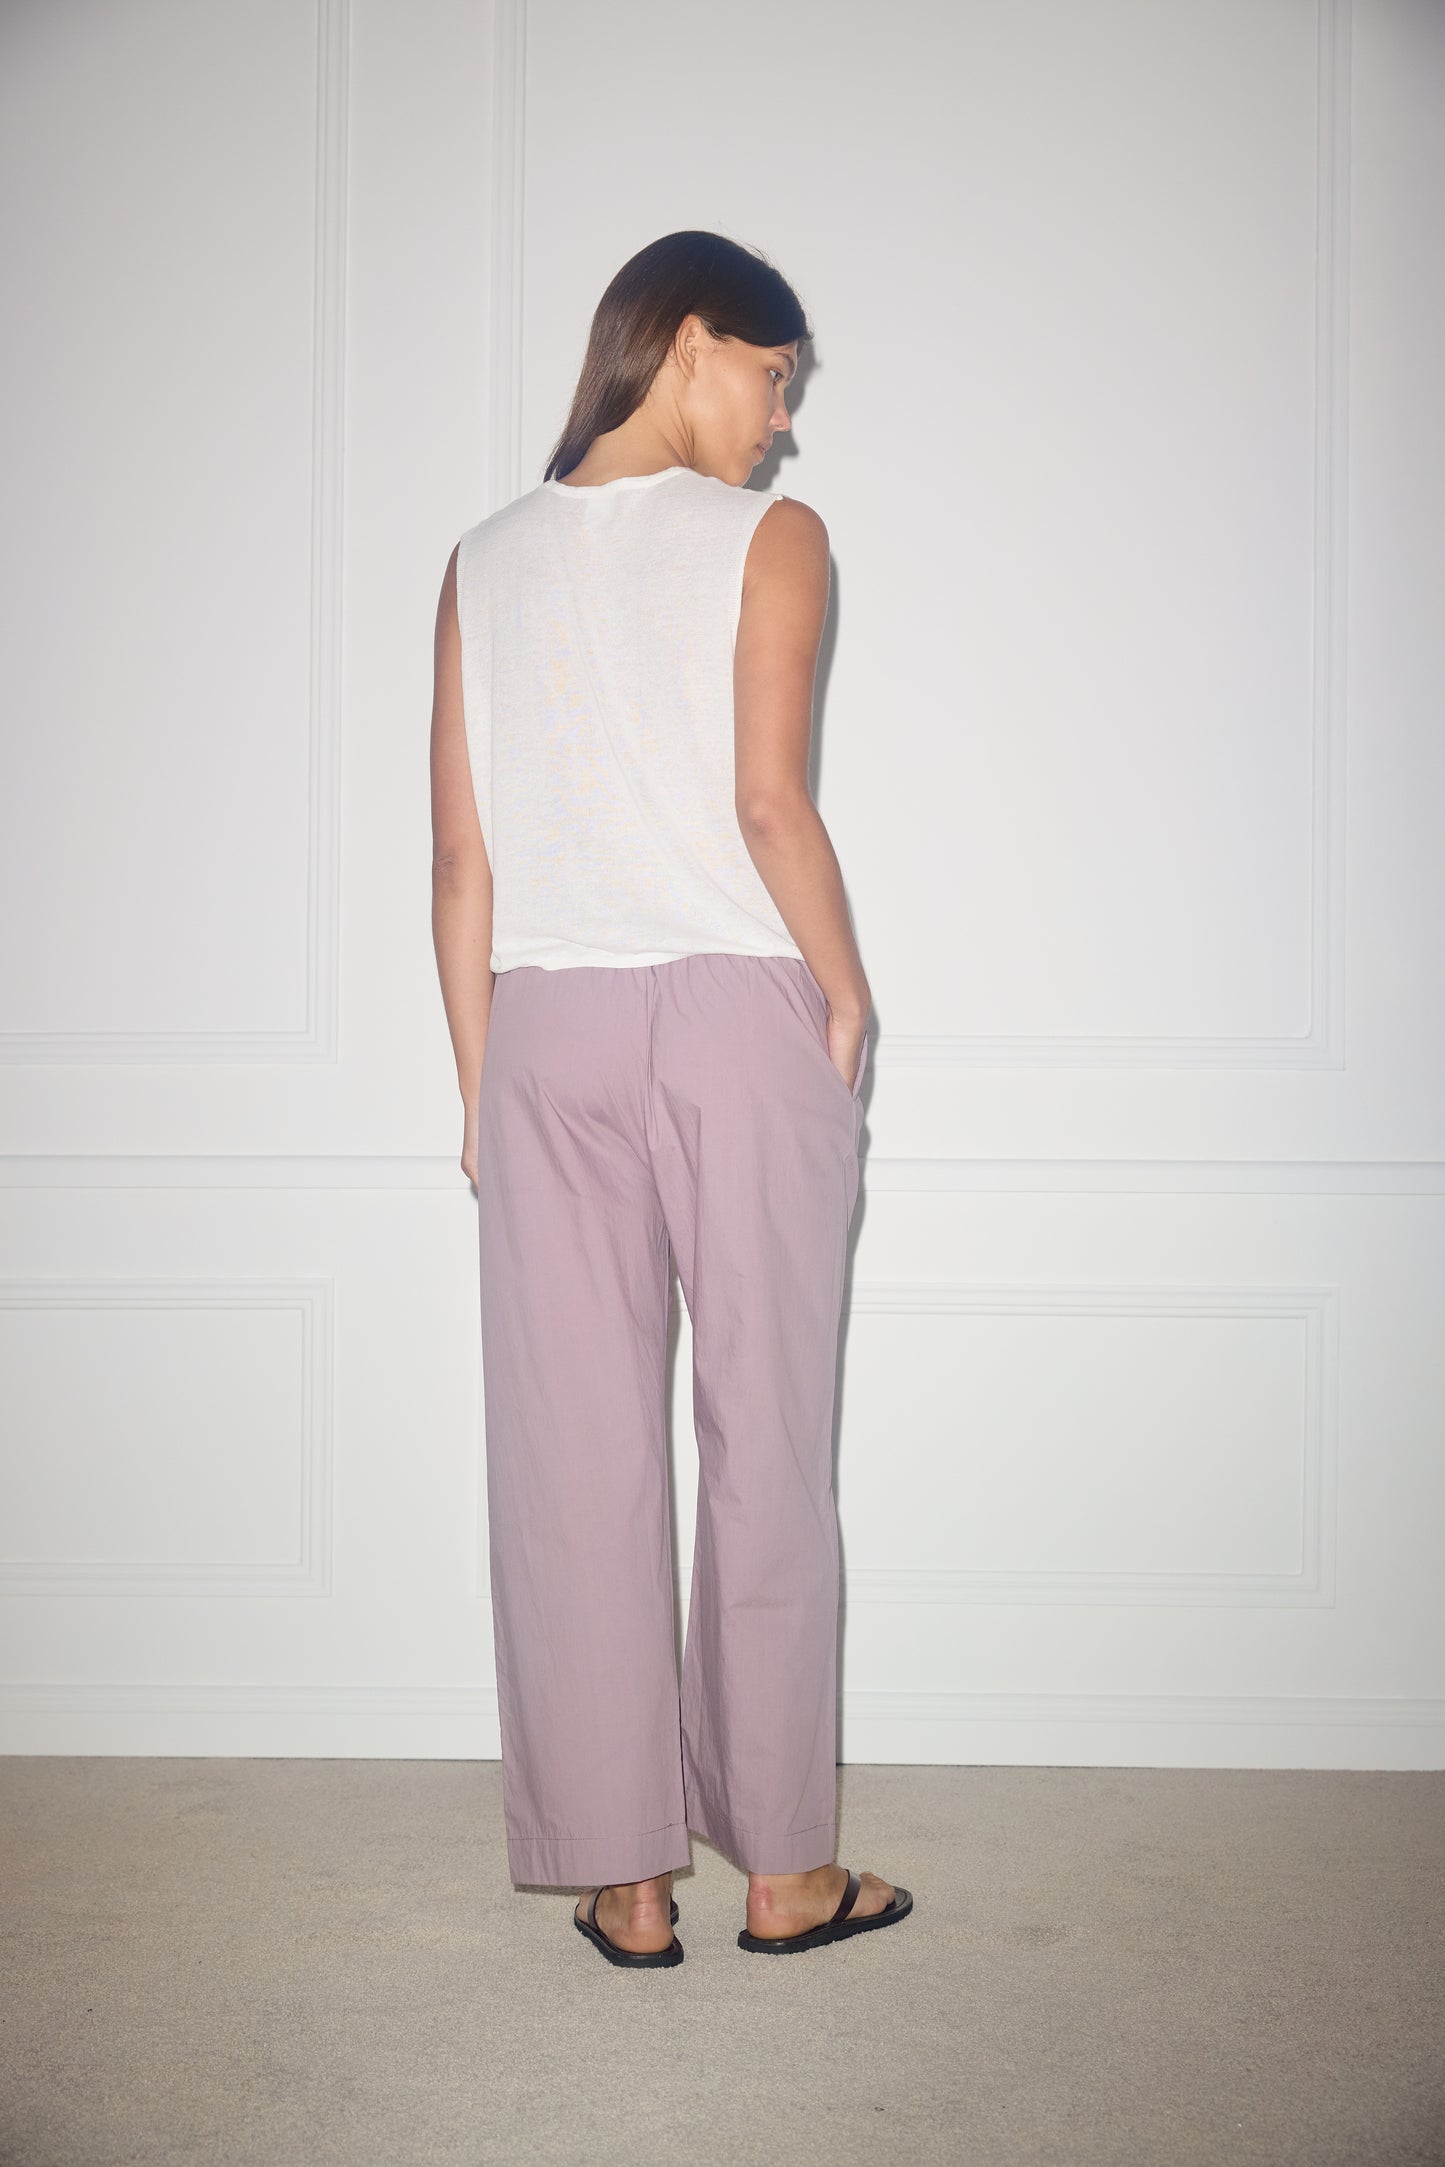 Female model wearing Ease Trouser - Mauve by Deiji Studios against plain background